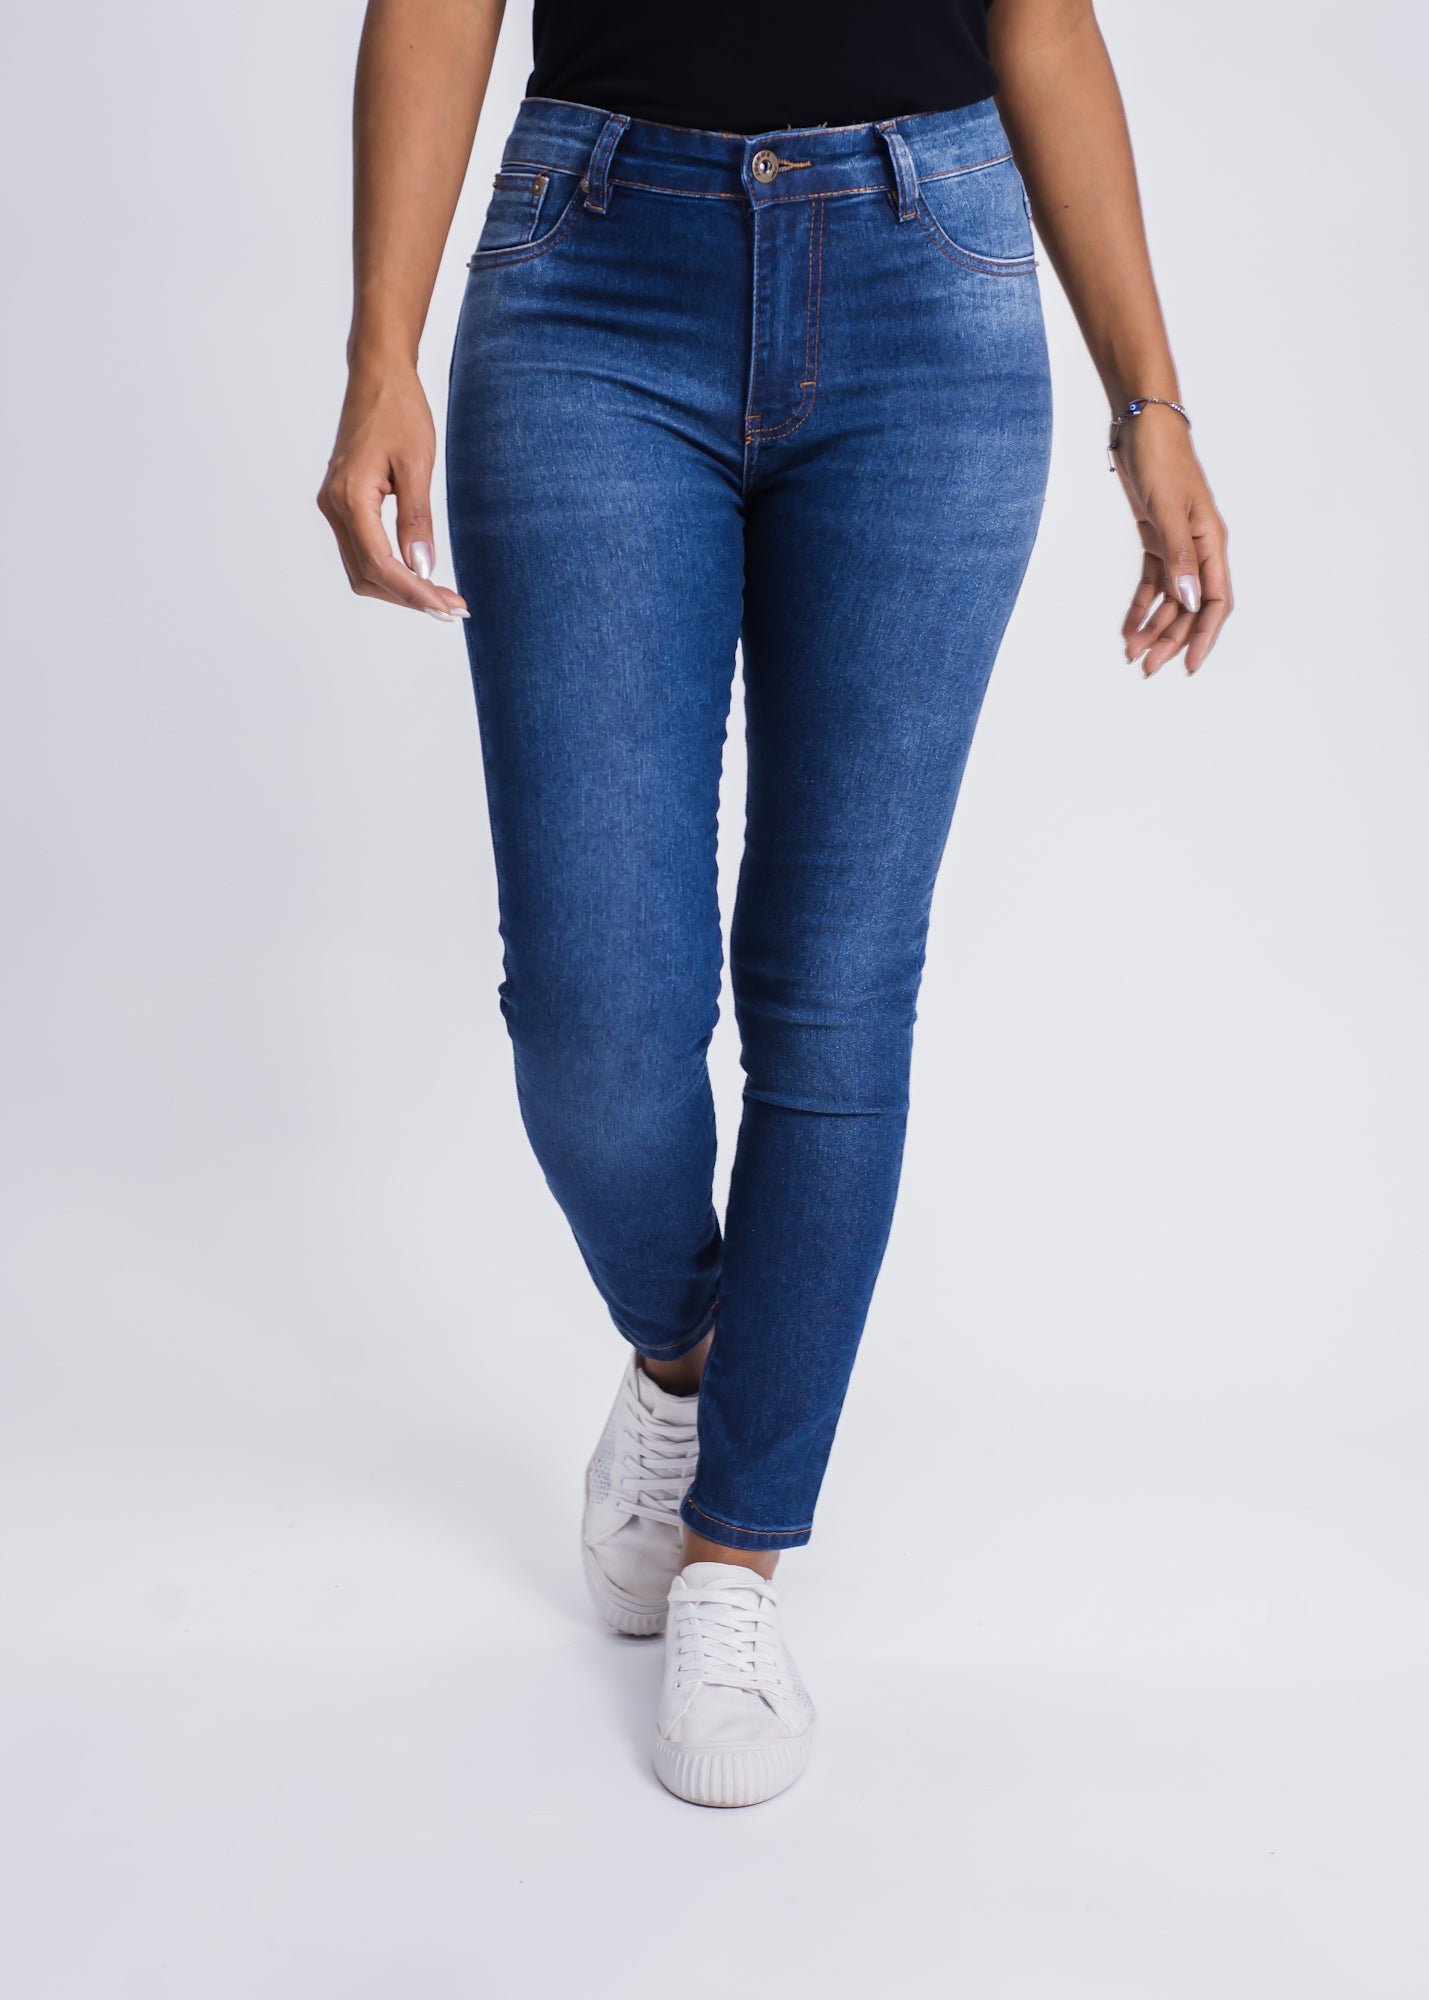 Calça Jeans Capri - Escura